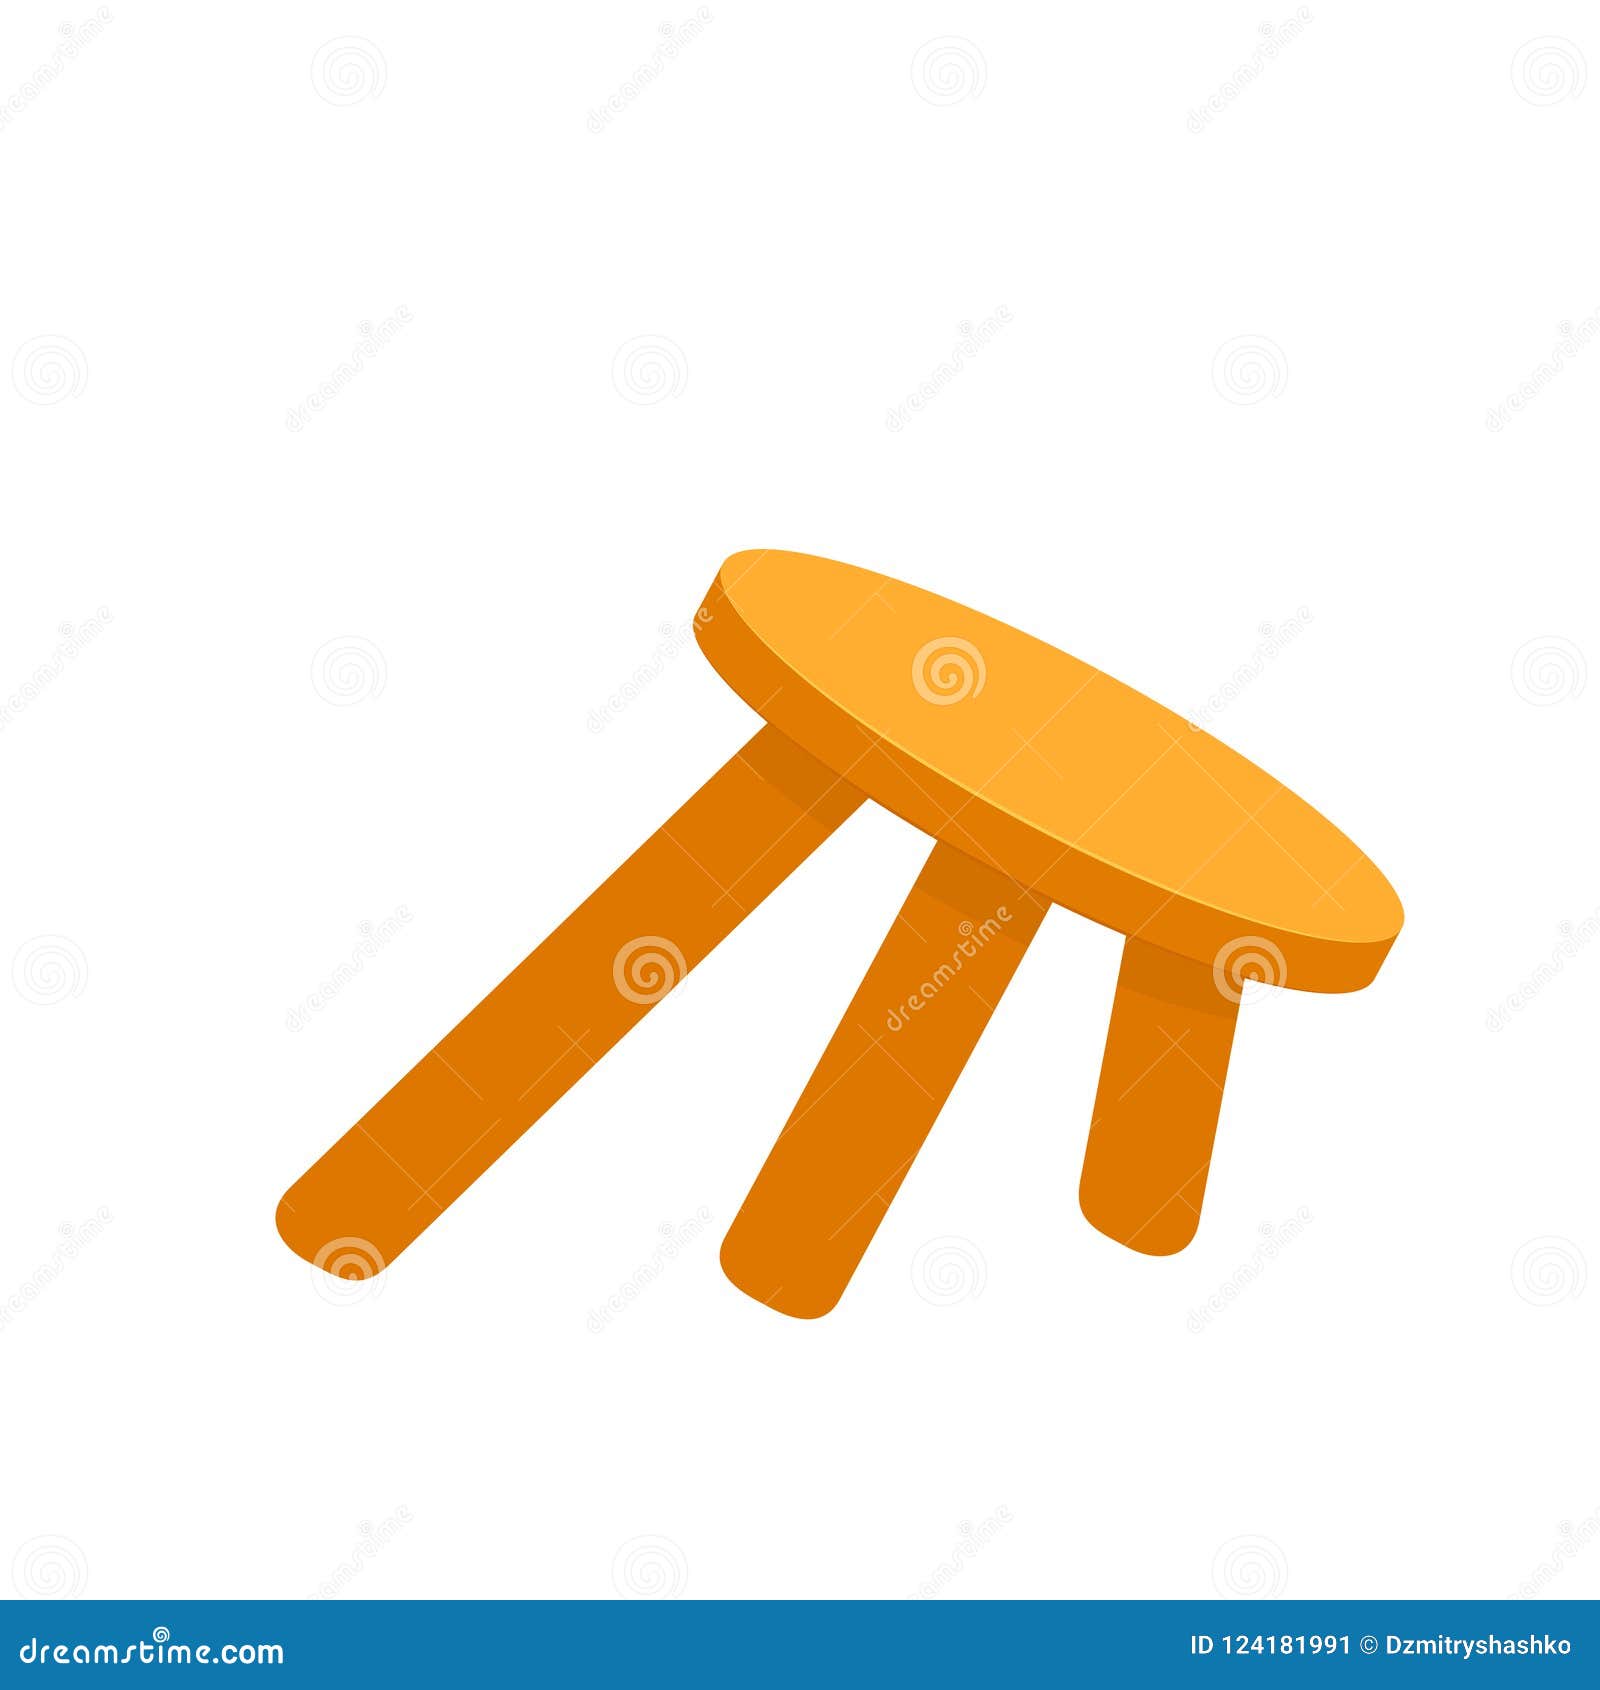 wobbly three legged stool